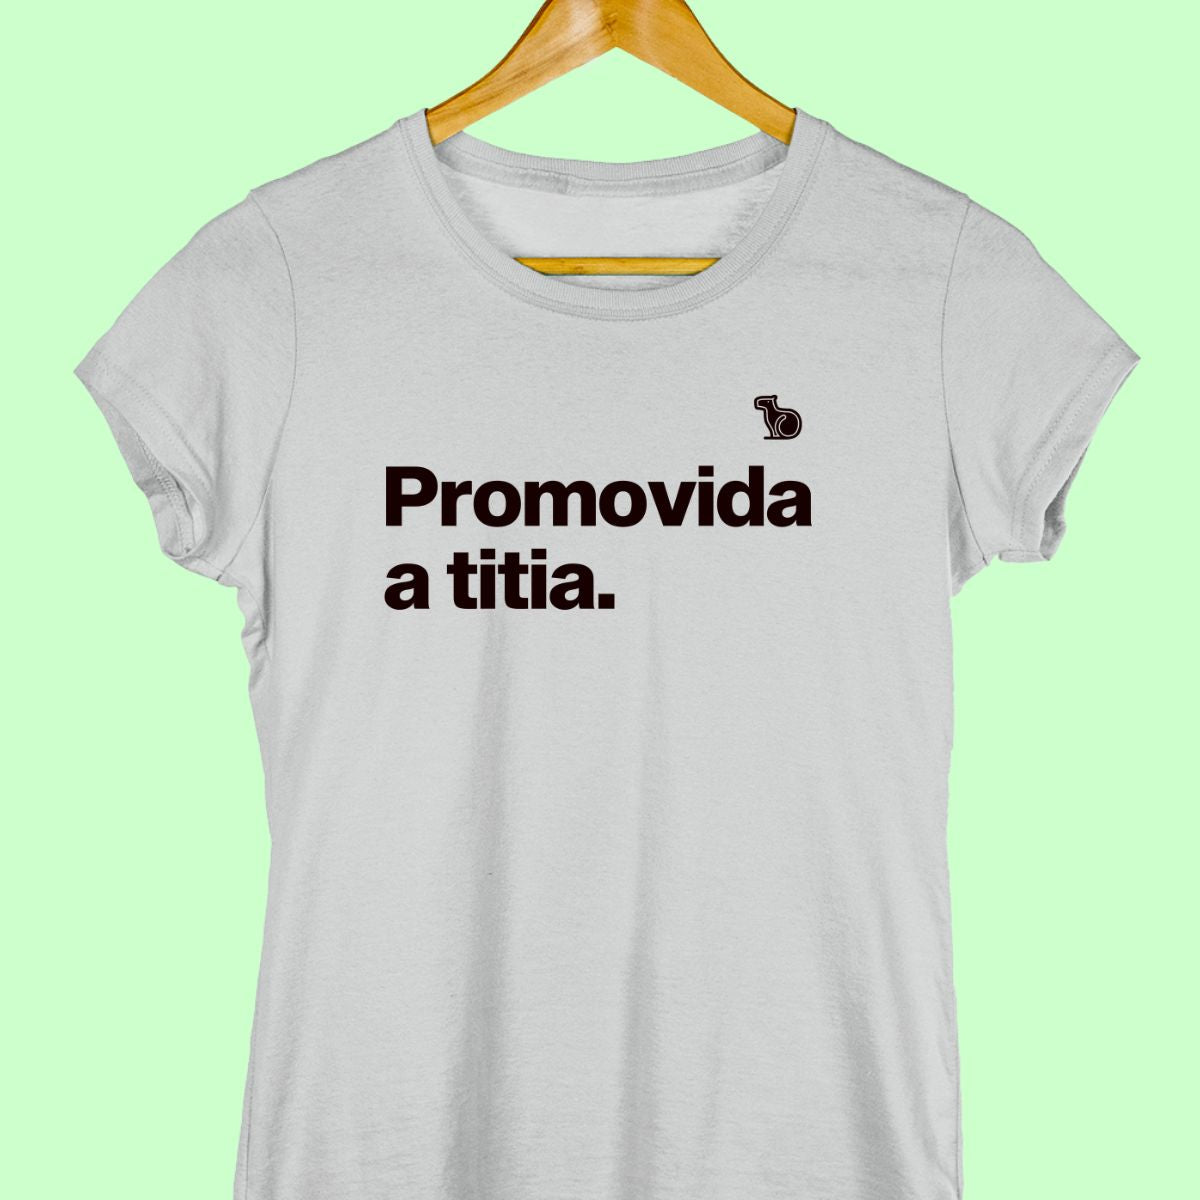 Camiseta com a frase "promovida a titia" feminina cinza.